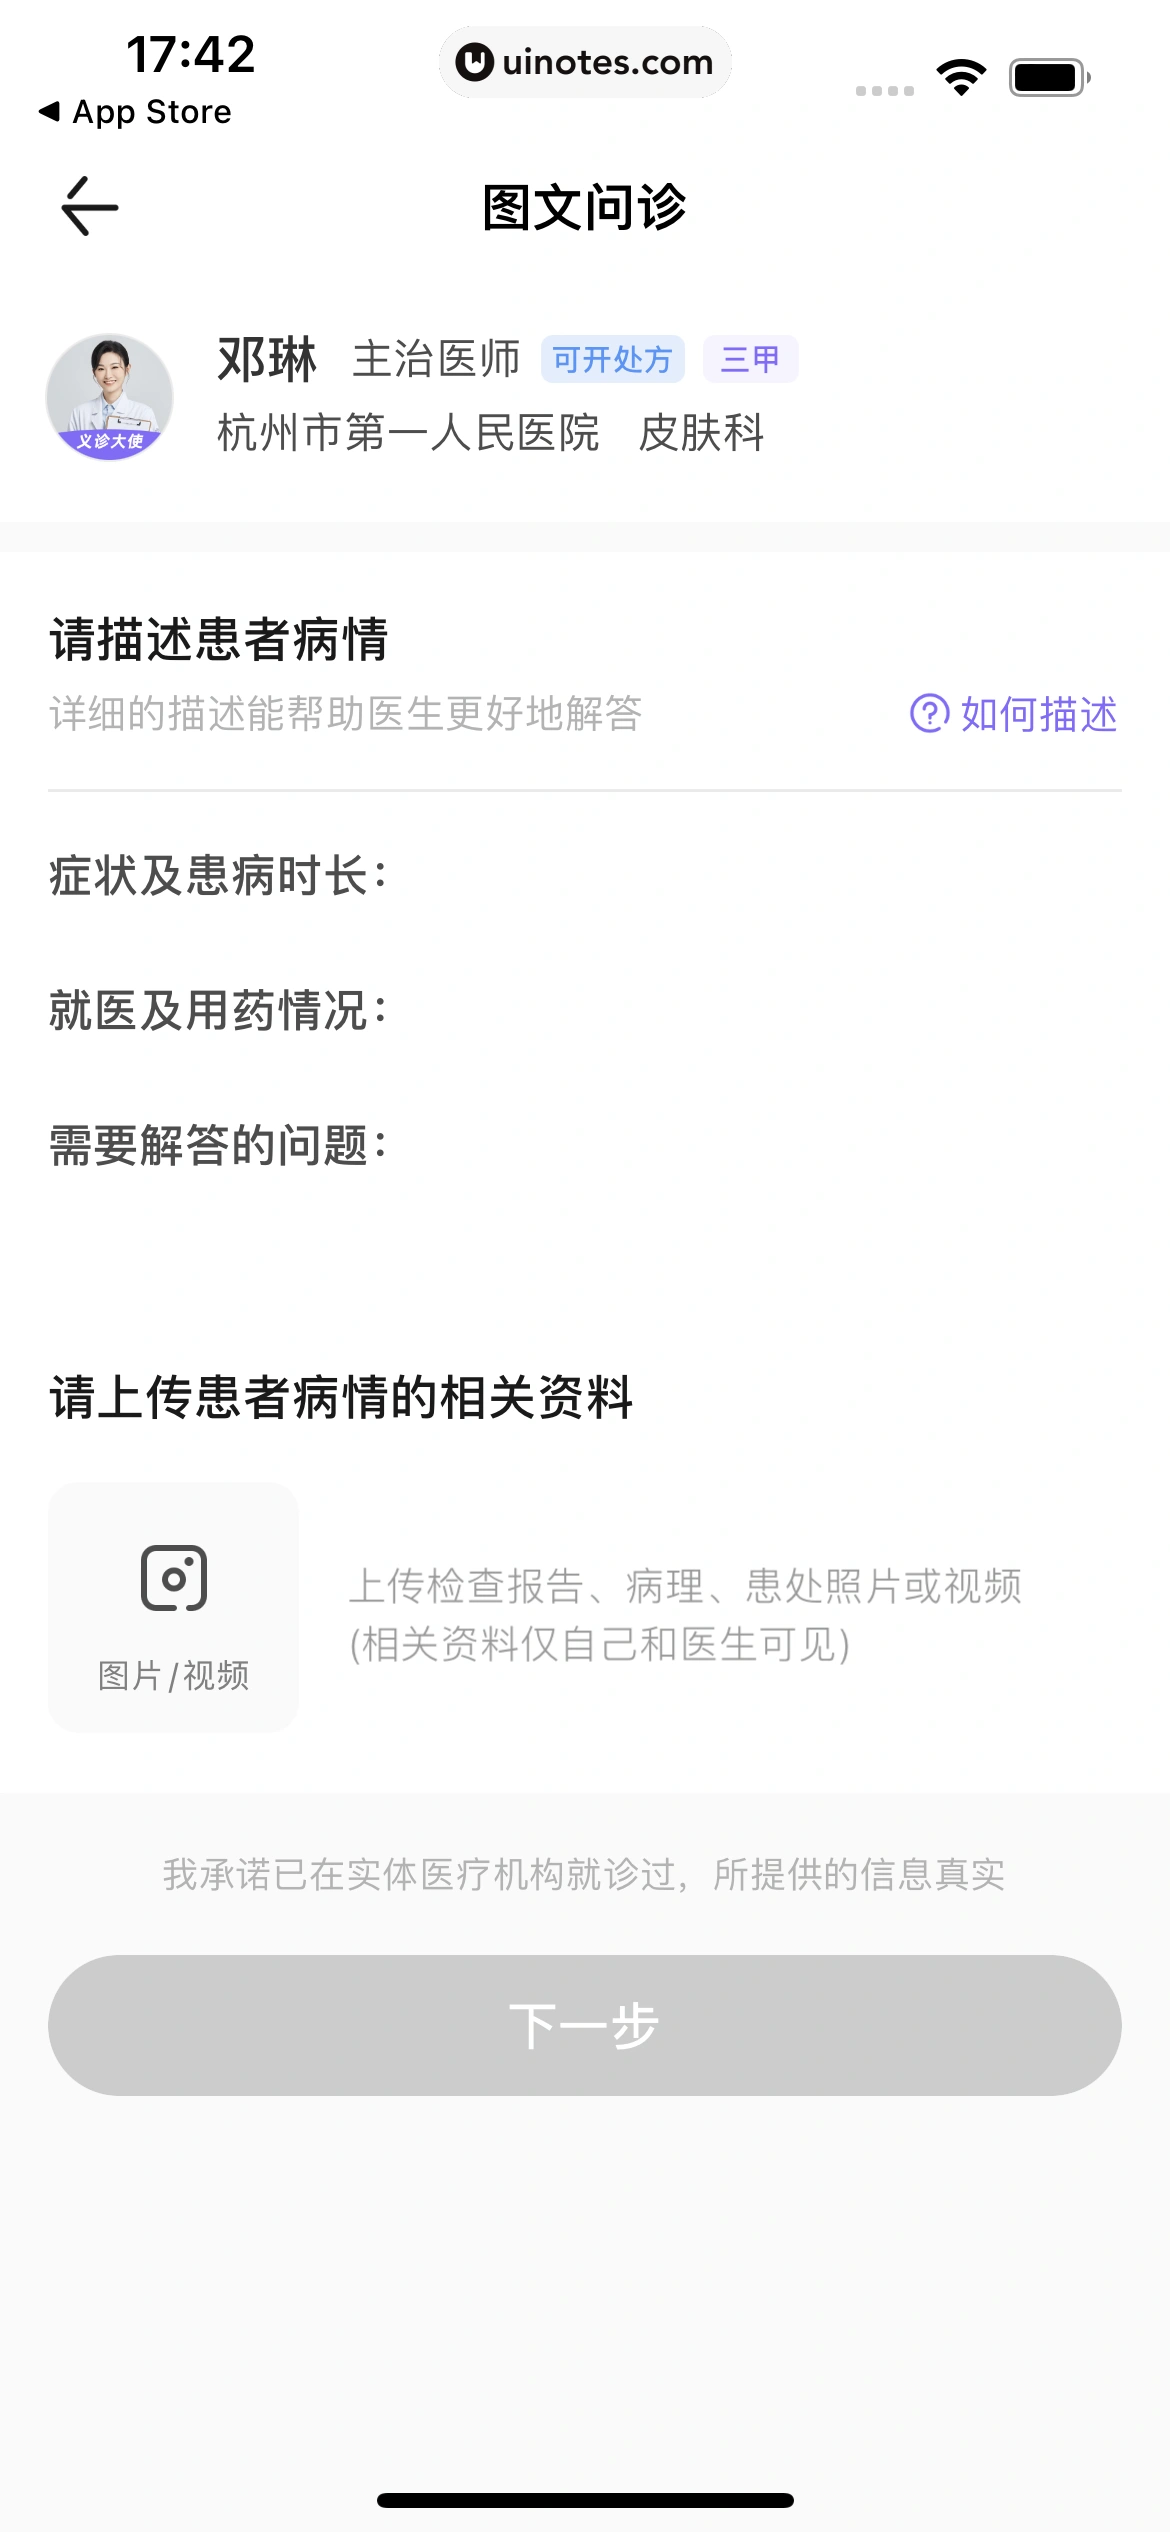 丁香医生 App 截图 124 - UI Notes